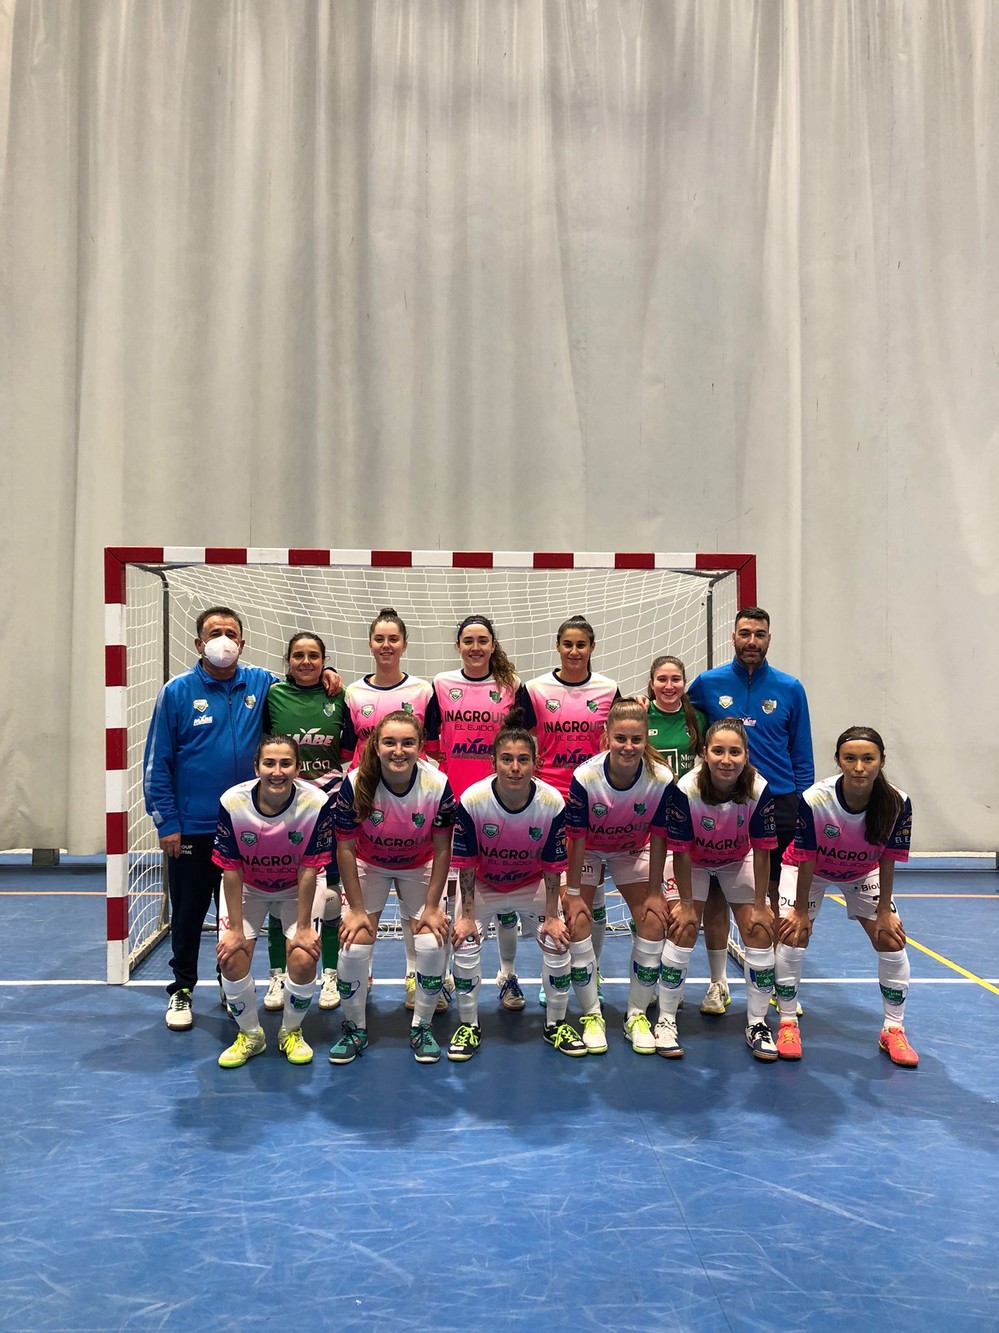 Inagroup Mabe El Ejido Futsal cae en Alicante